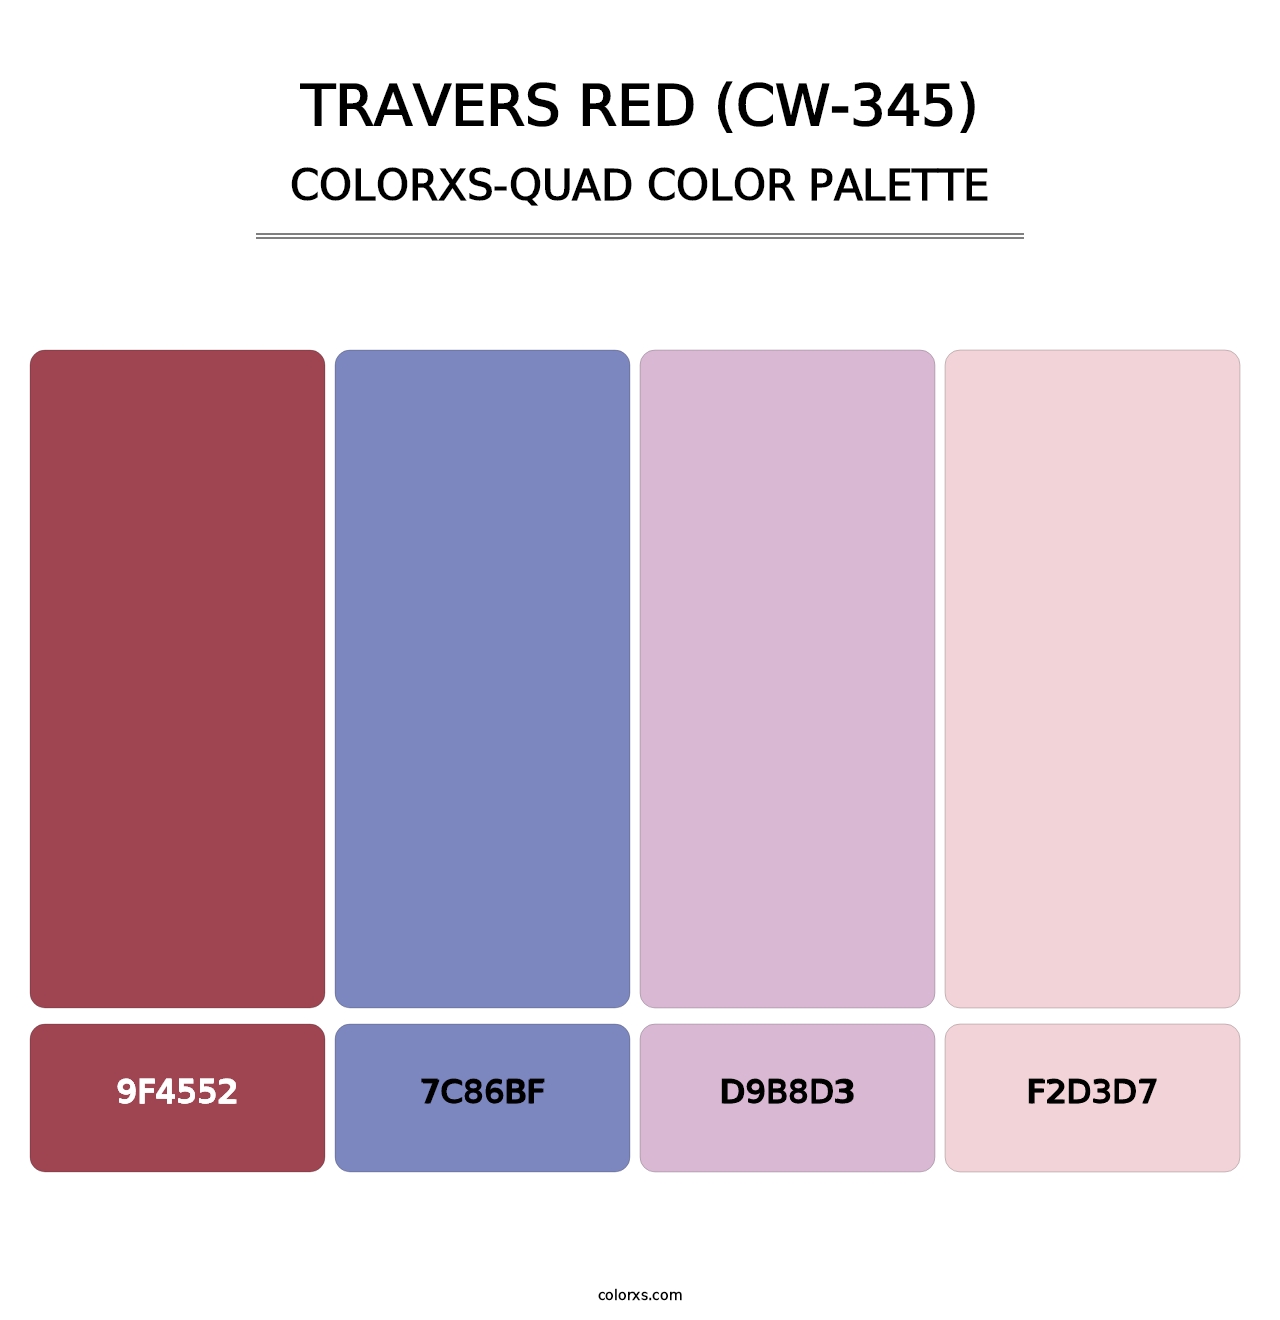 Travers Red (CW-345) - Colorxs Quad Palette